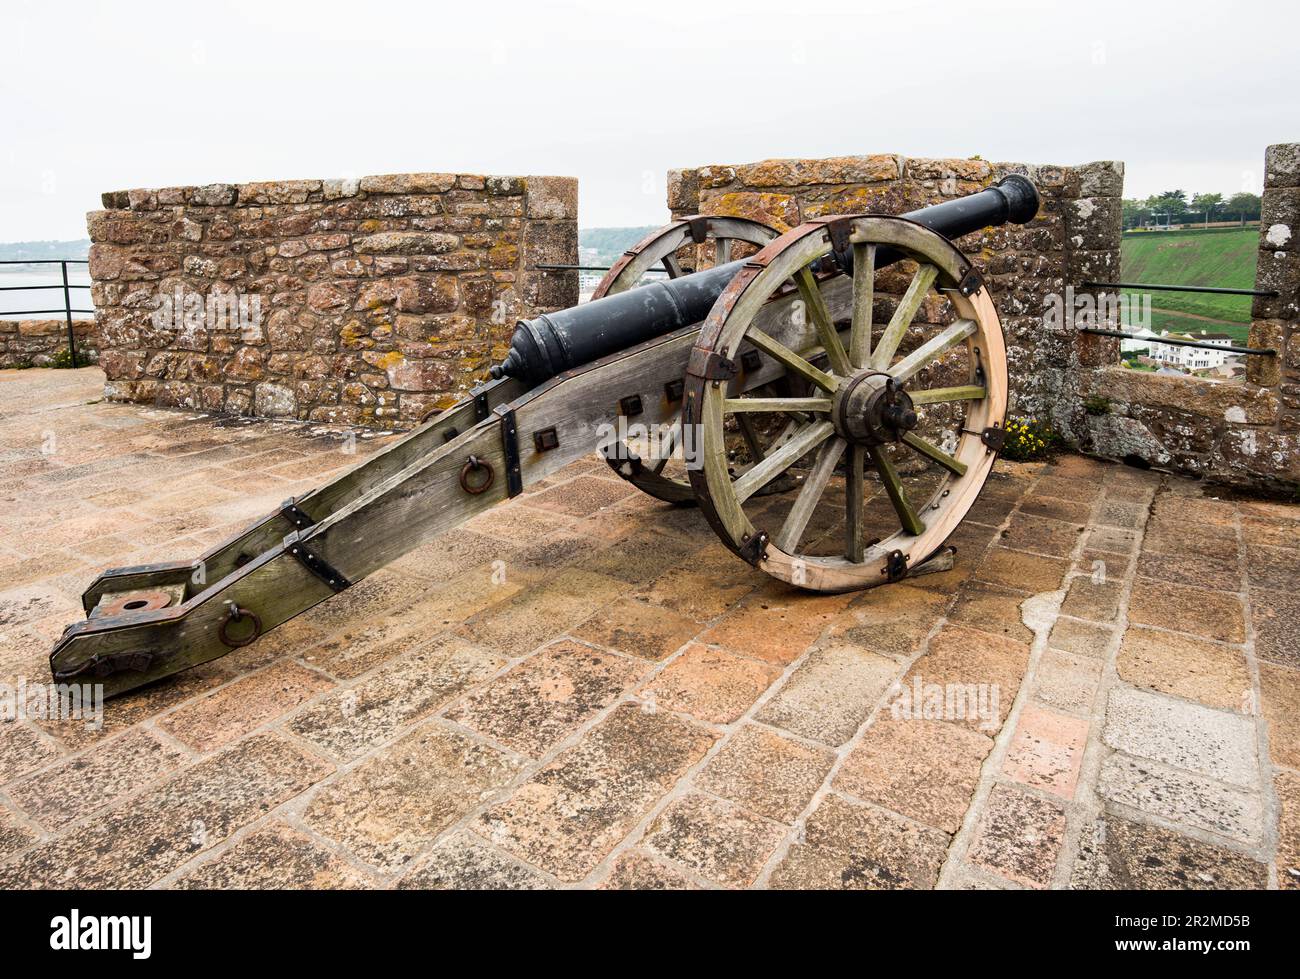 Cannone da trovare dopo aver scalato molti voli di scalini fino alla piattaforma più alta del Mont Orguel Castle, Jersey, Isole del canale. Foto Stock